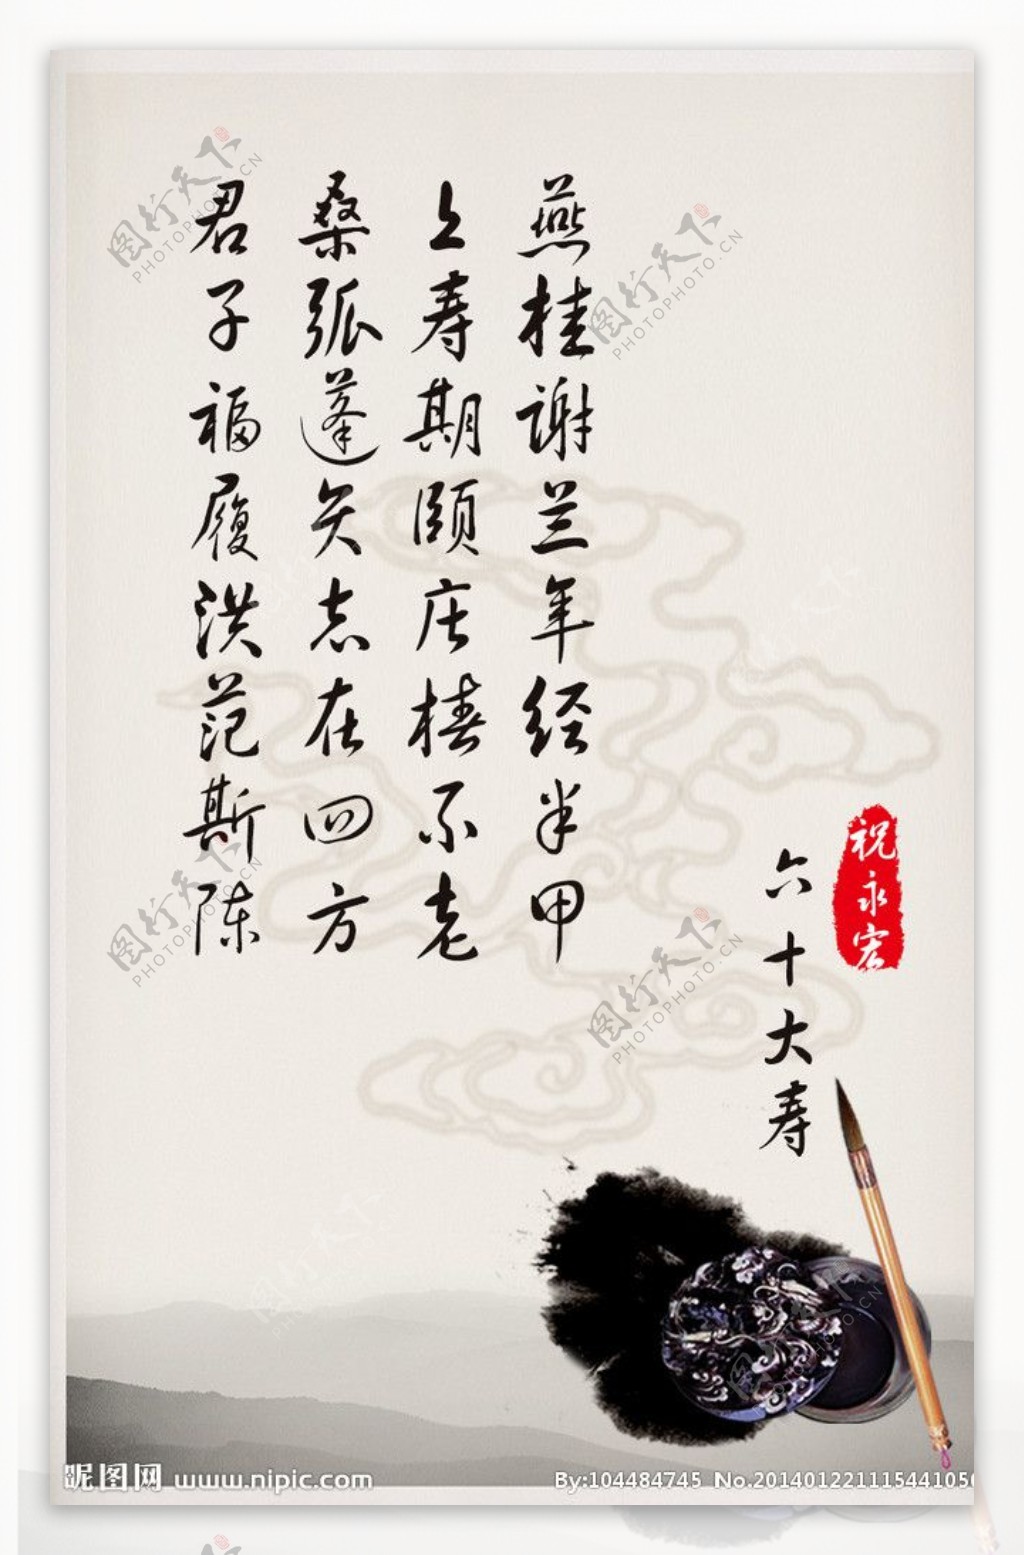 中国风水墨祝寿瓶贴图片